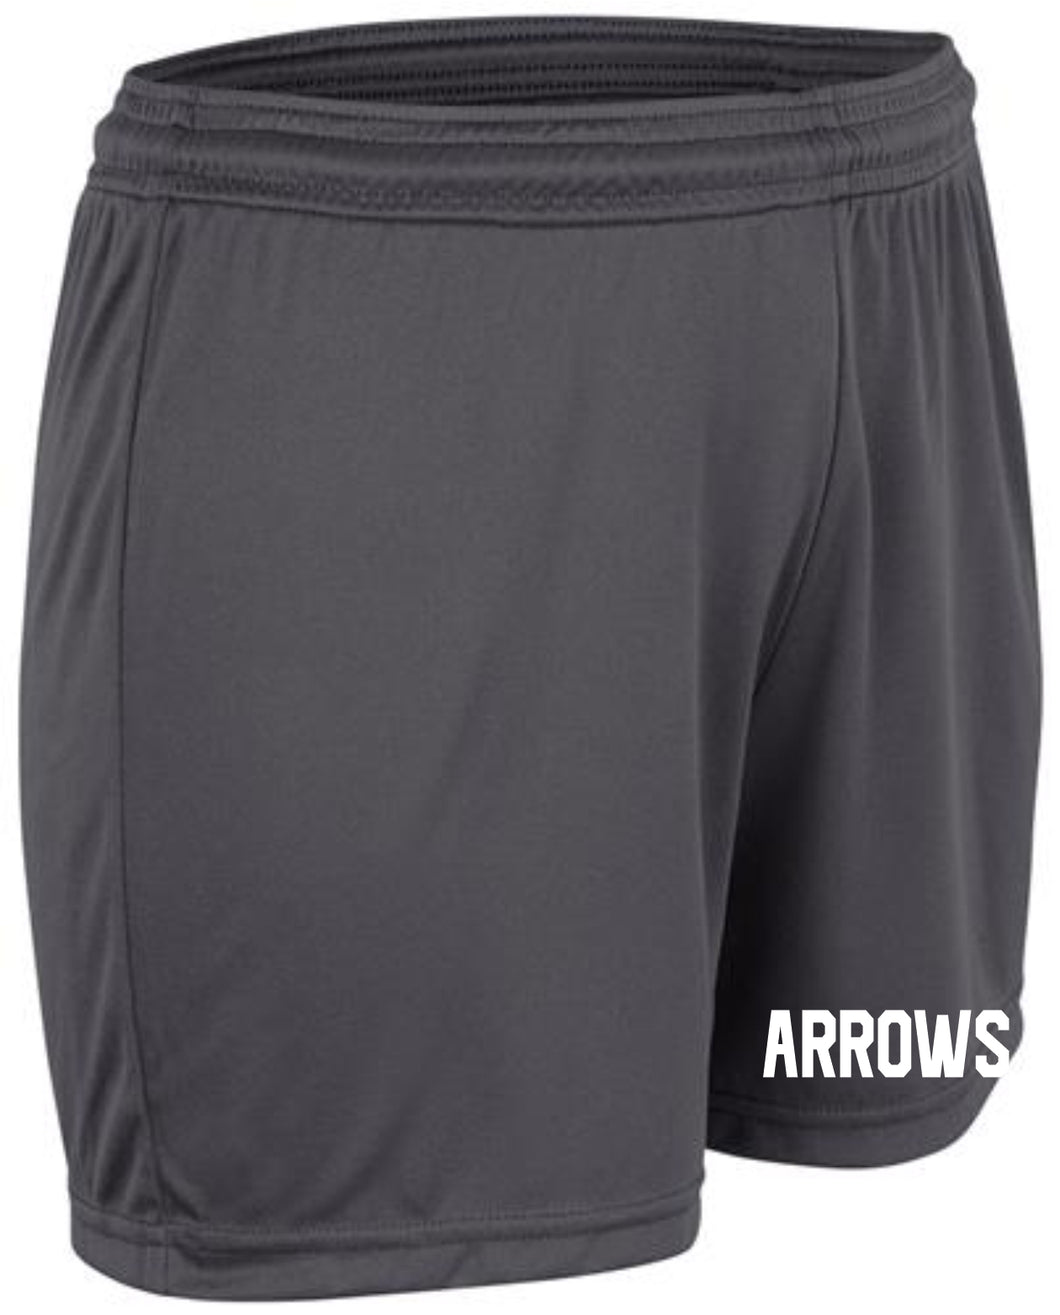 Arrows Vision Shorts GIRLS